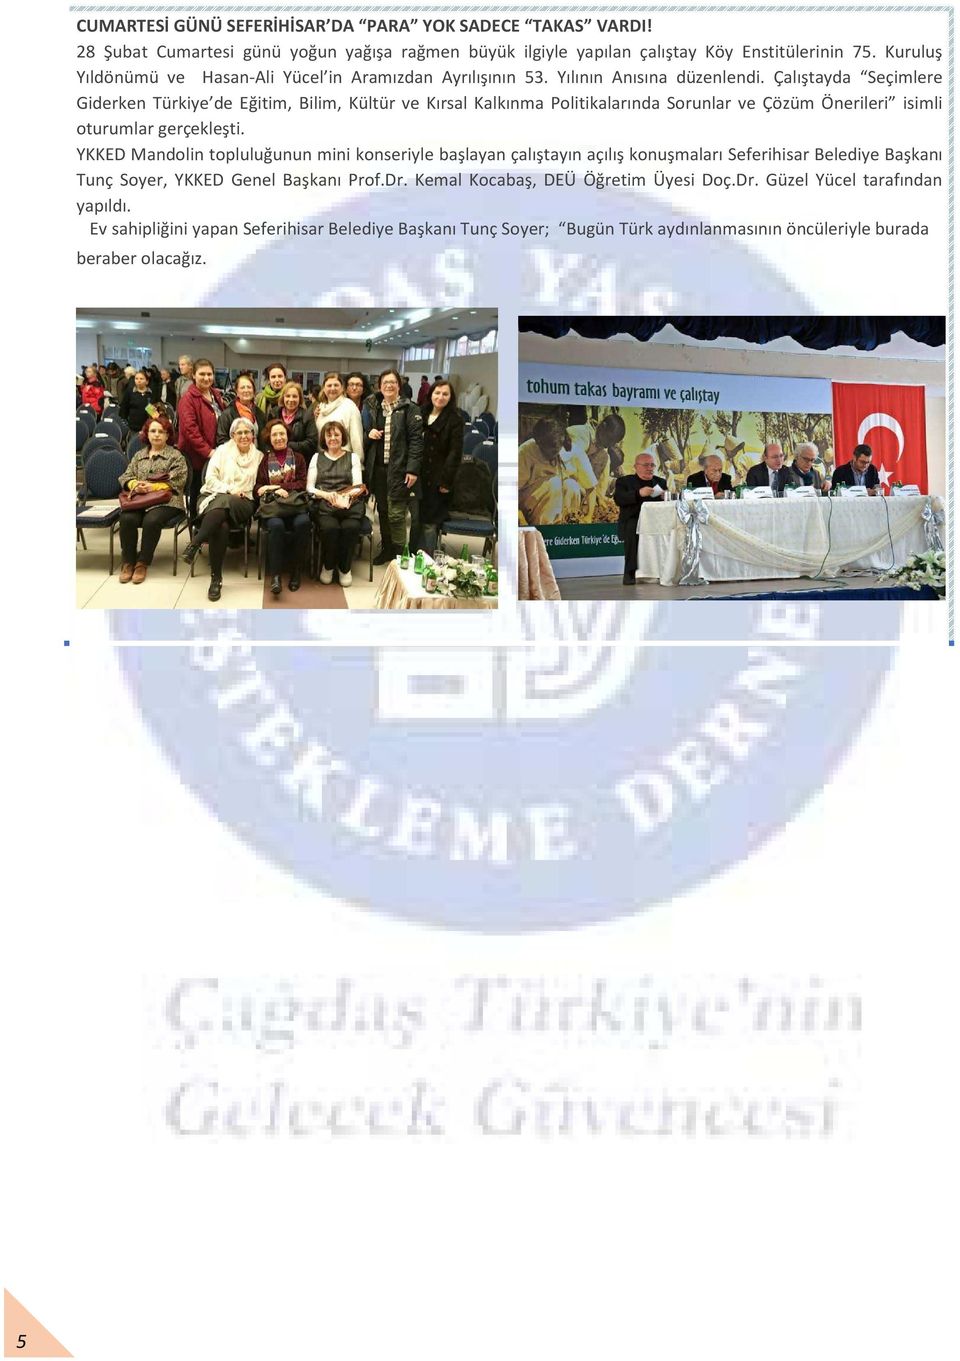 Çalıştayda Seçimlere Giderken Türkiye de Eğitim, Bilim, Kültür ve Kırsal Kalkınma Politikalarında Sorunlar ve Çözüm Önerileri isimli oturumlar gerçekleşti.